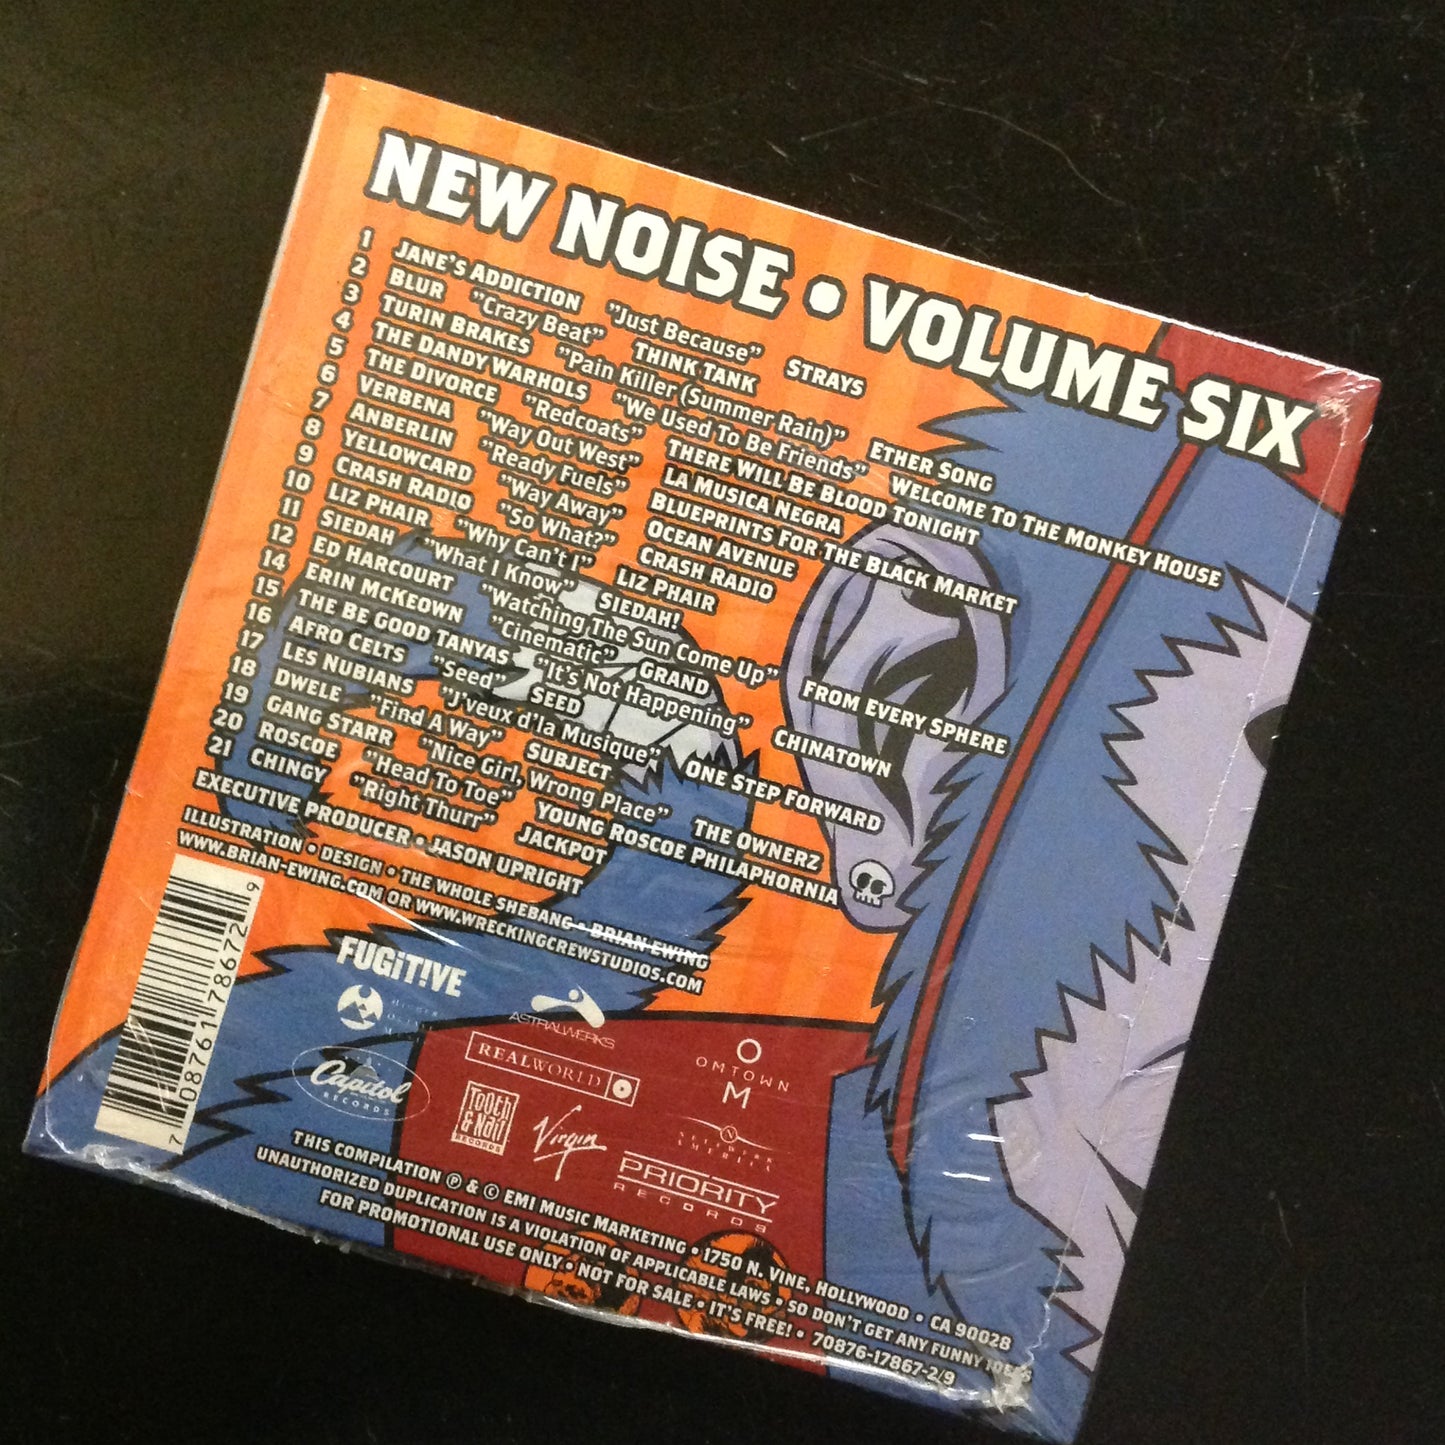 CD Sampler Sample EMI New Noise Volume Six Various Artists SEALED 2003